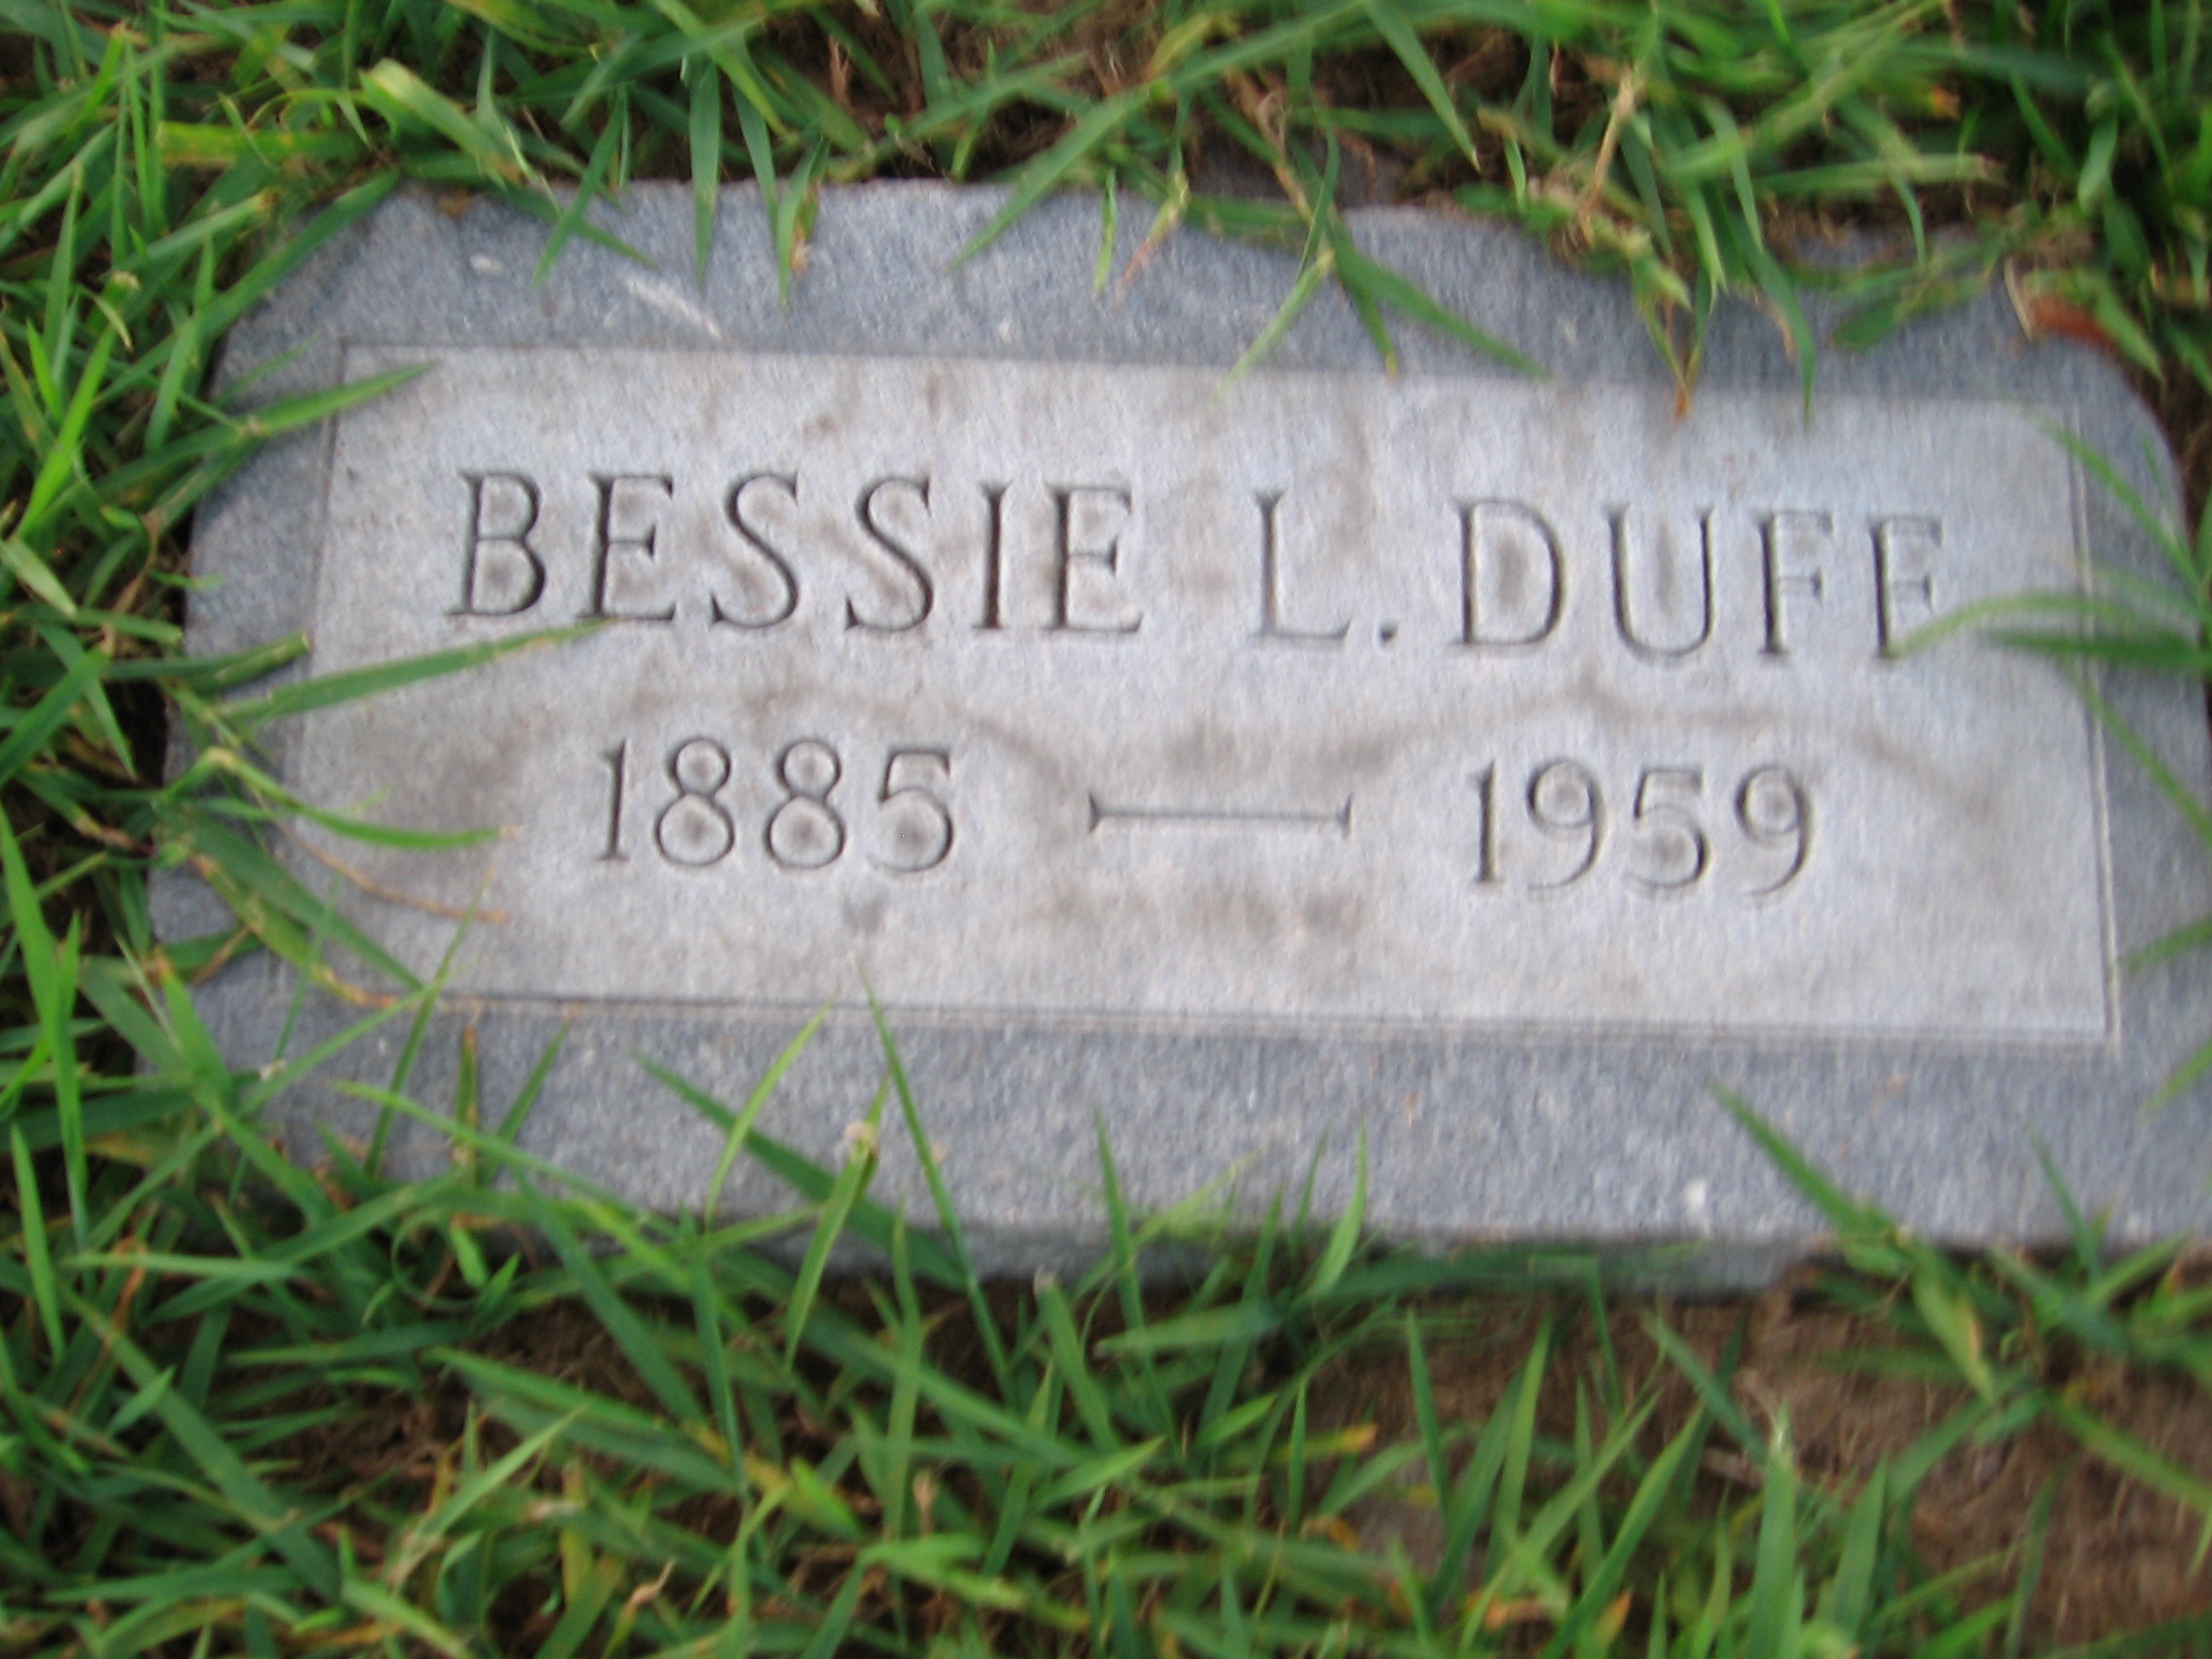 Bessie L Duff